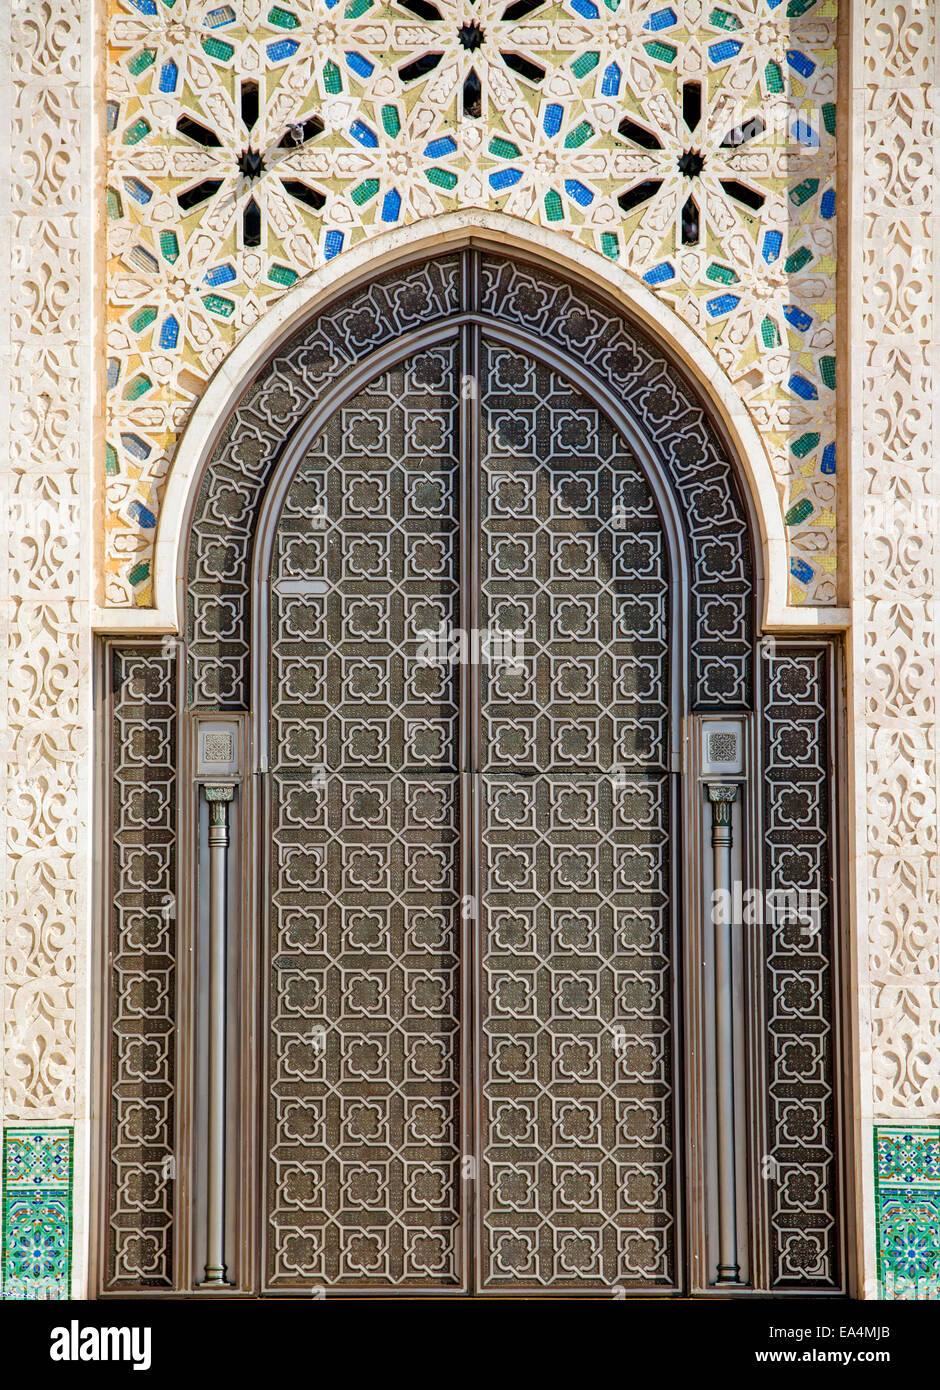 Porte arabe Banque de photographies et d'images à haute résolution - Alamy